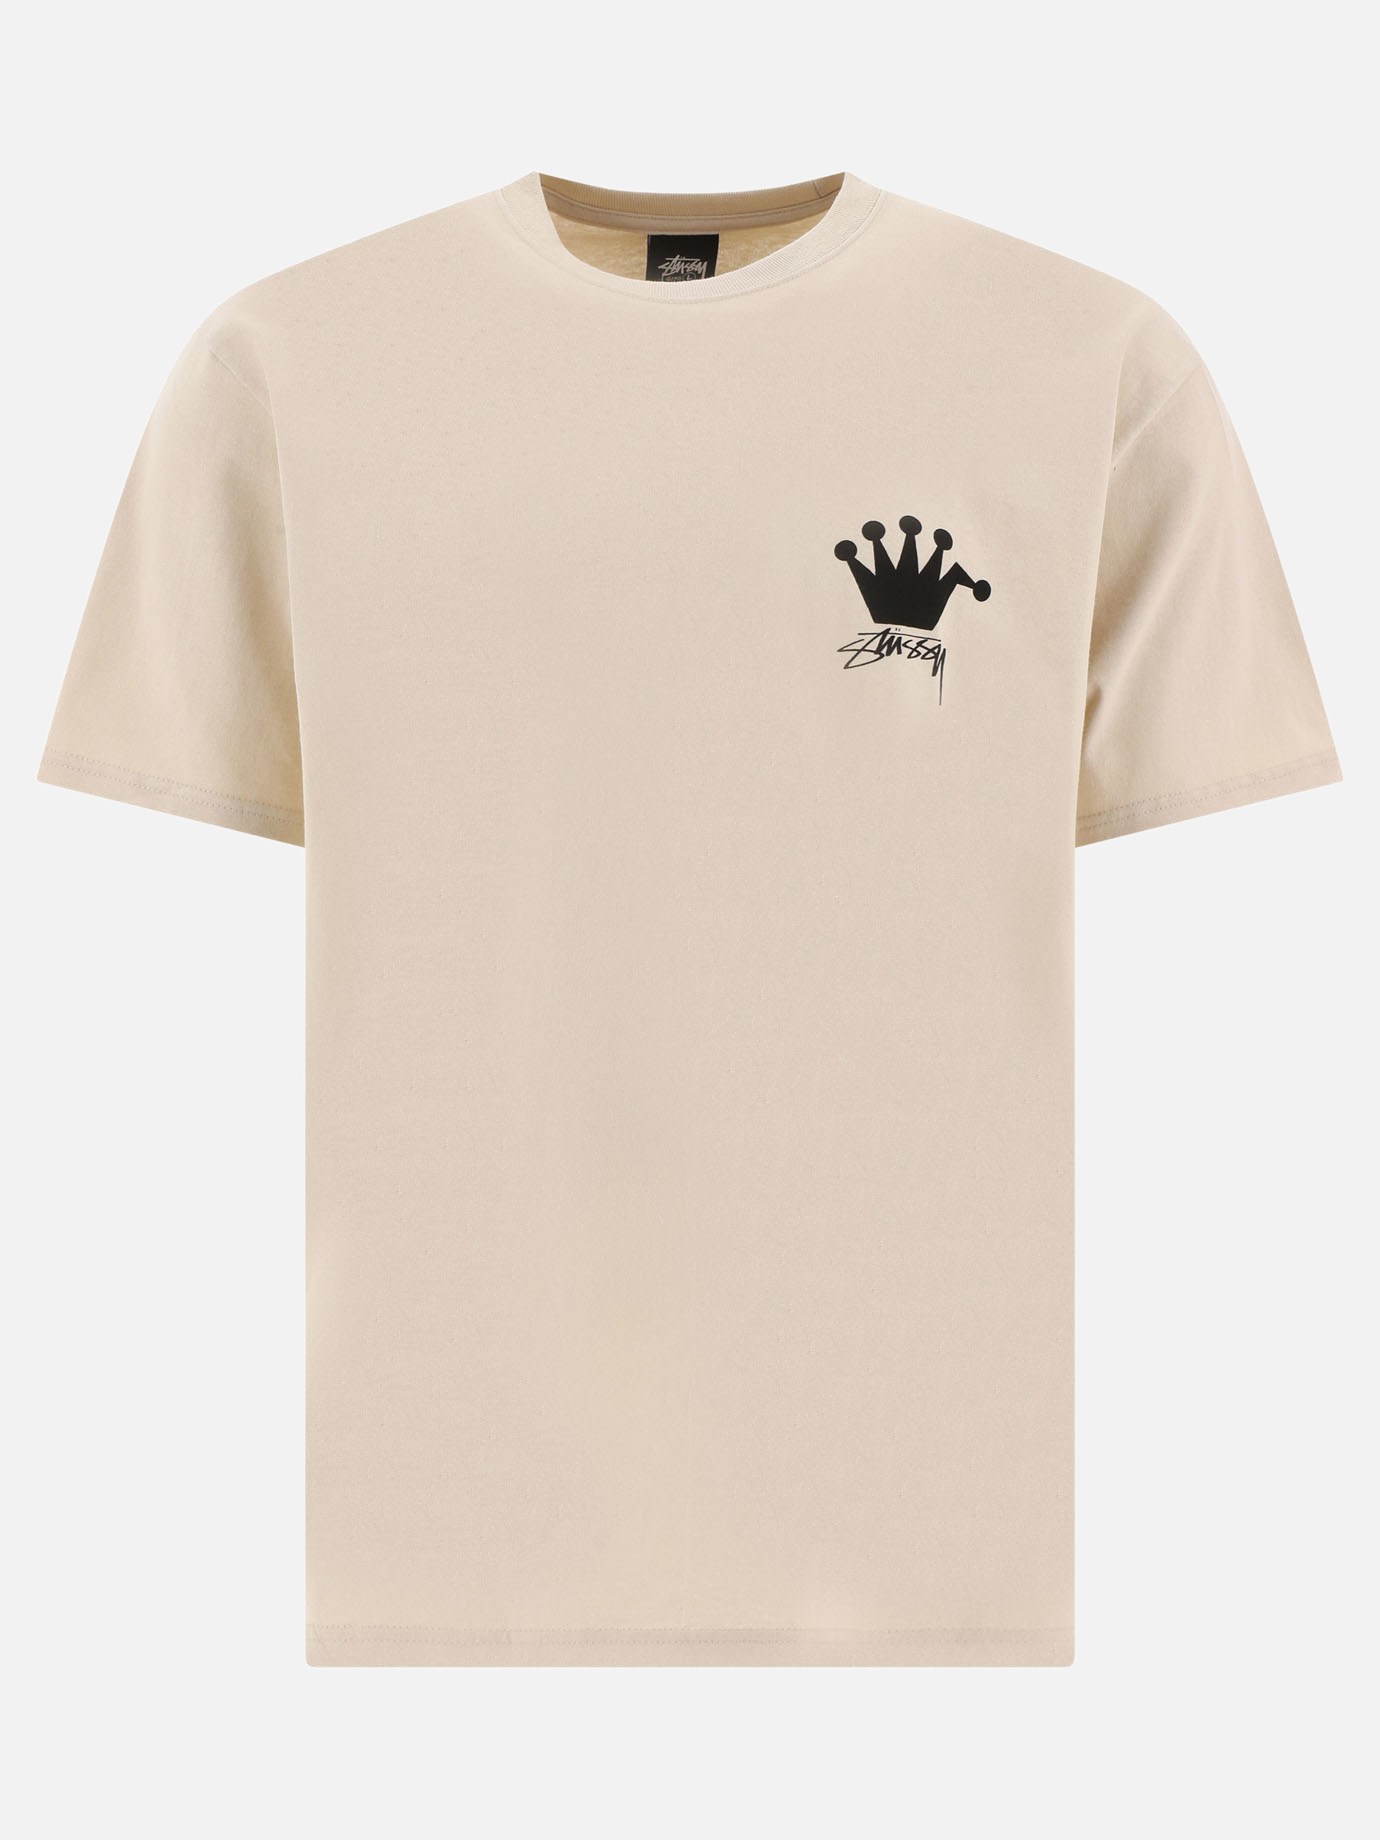 T-shirt  LB Crown by Stüssy - 4